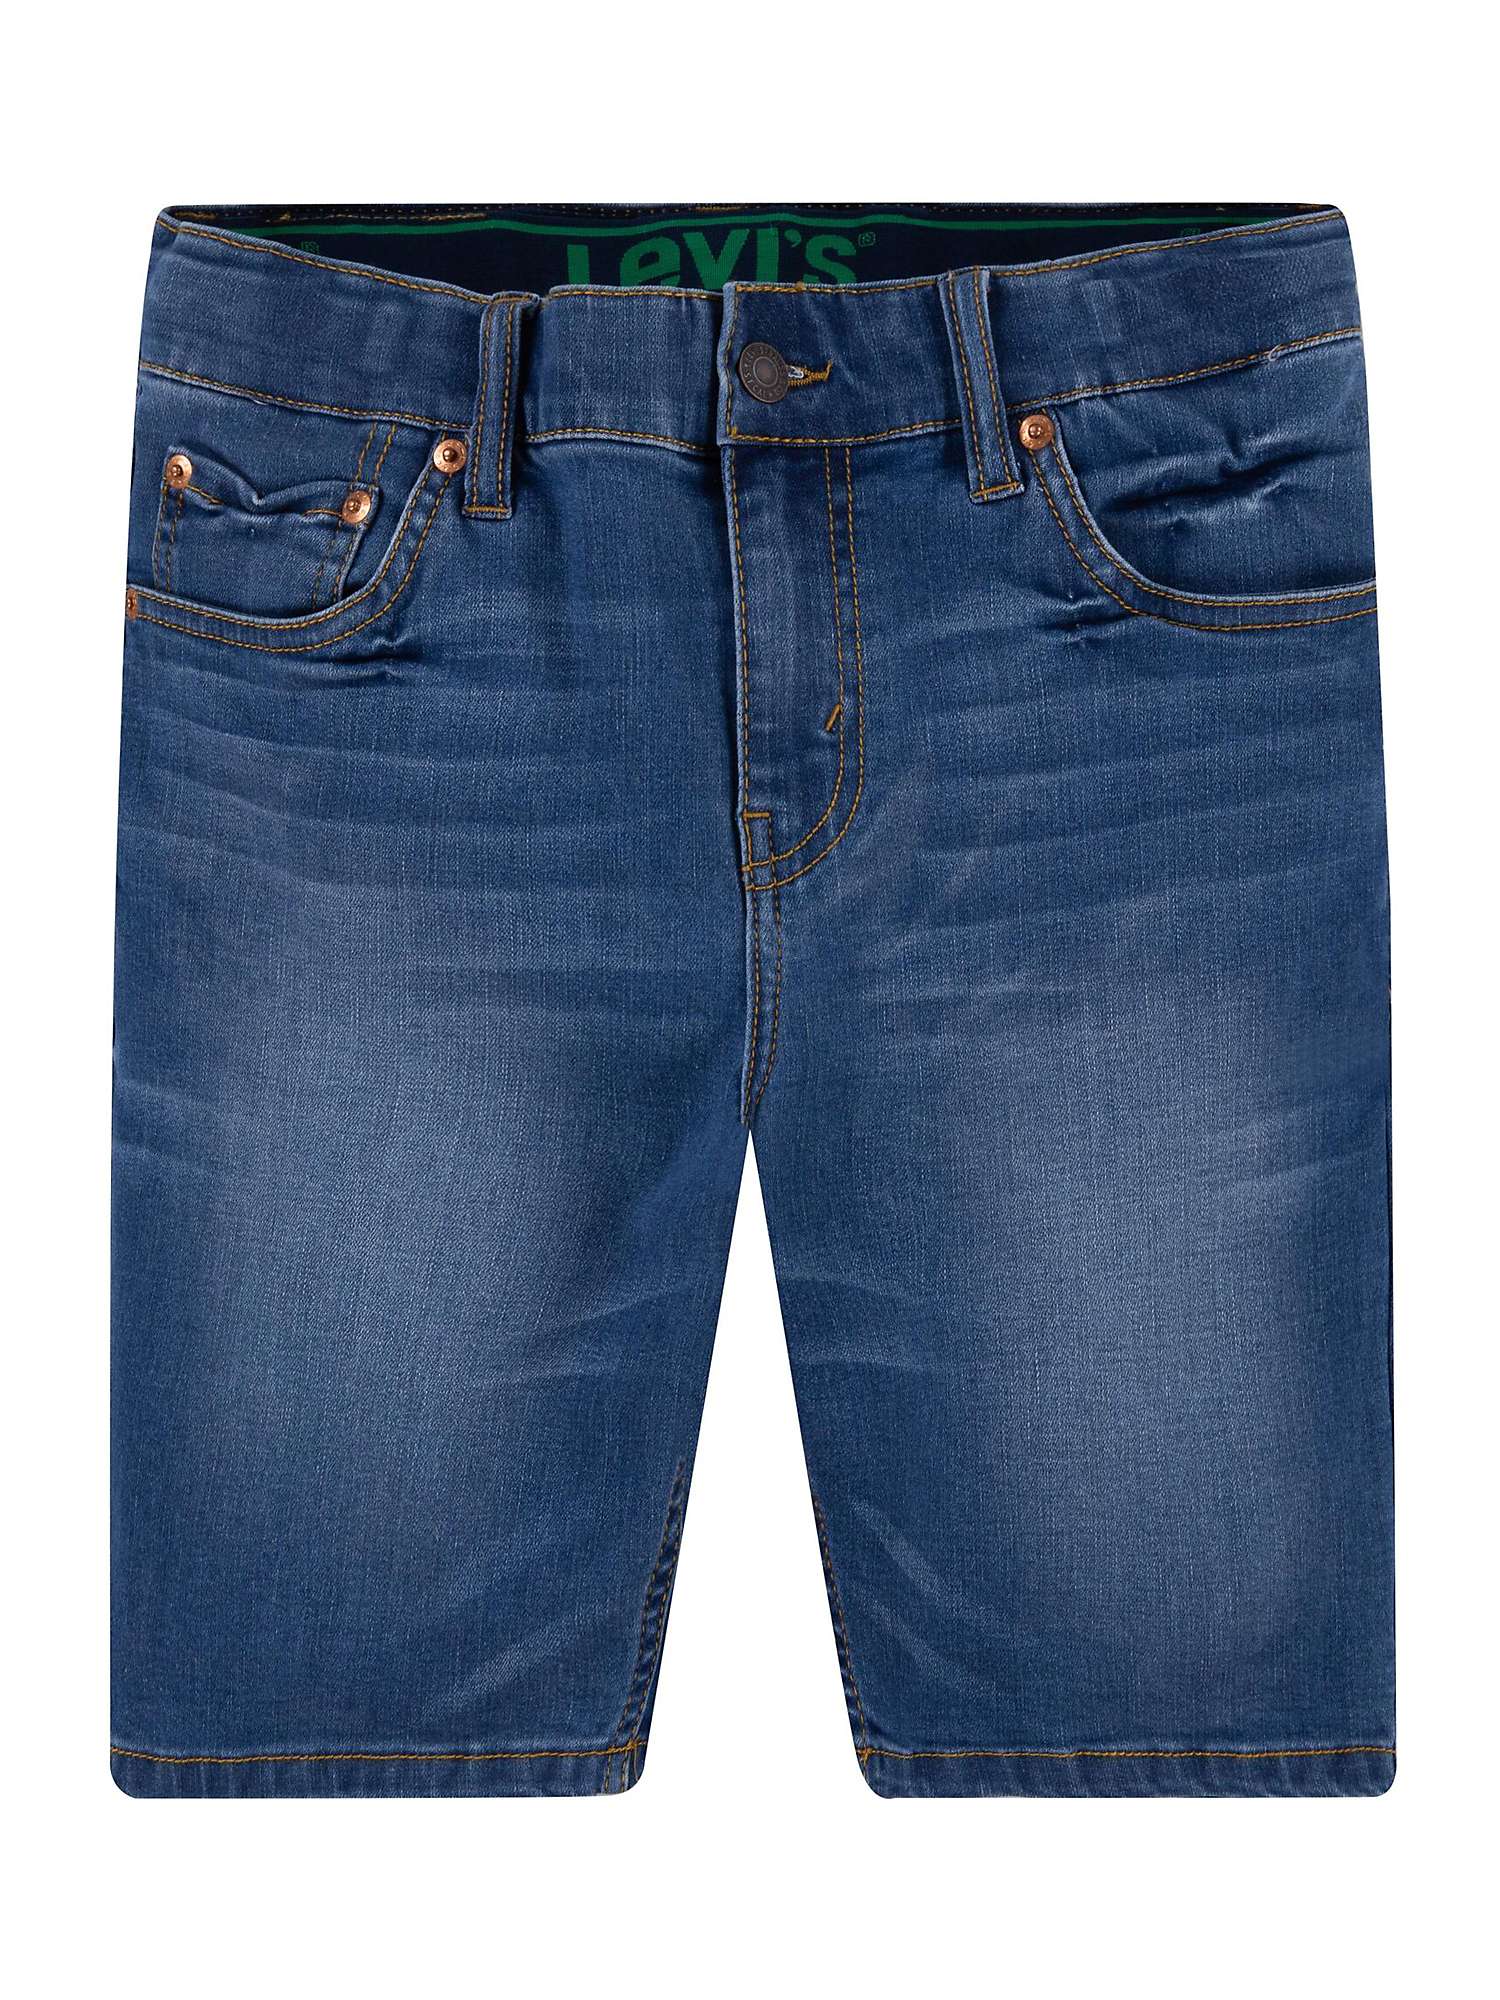 Buy Levi's Kids' Slim Fit Shorts, Blue Online at johnlewis.com